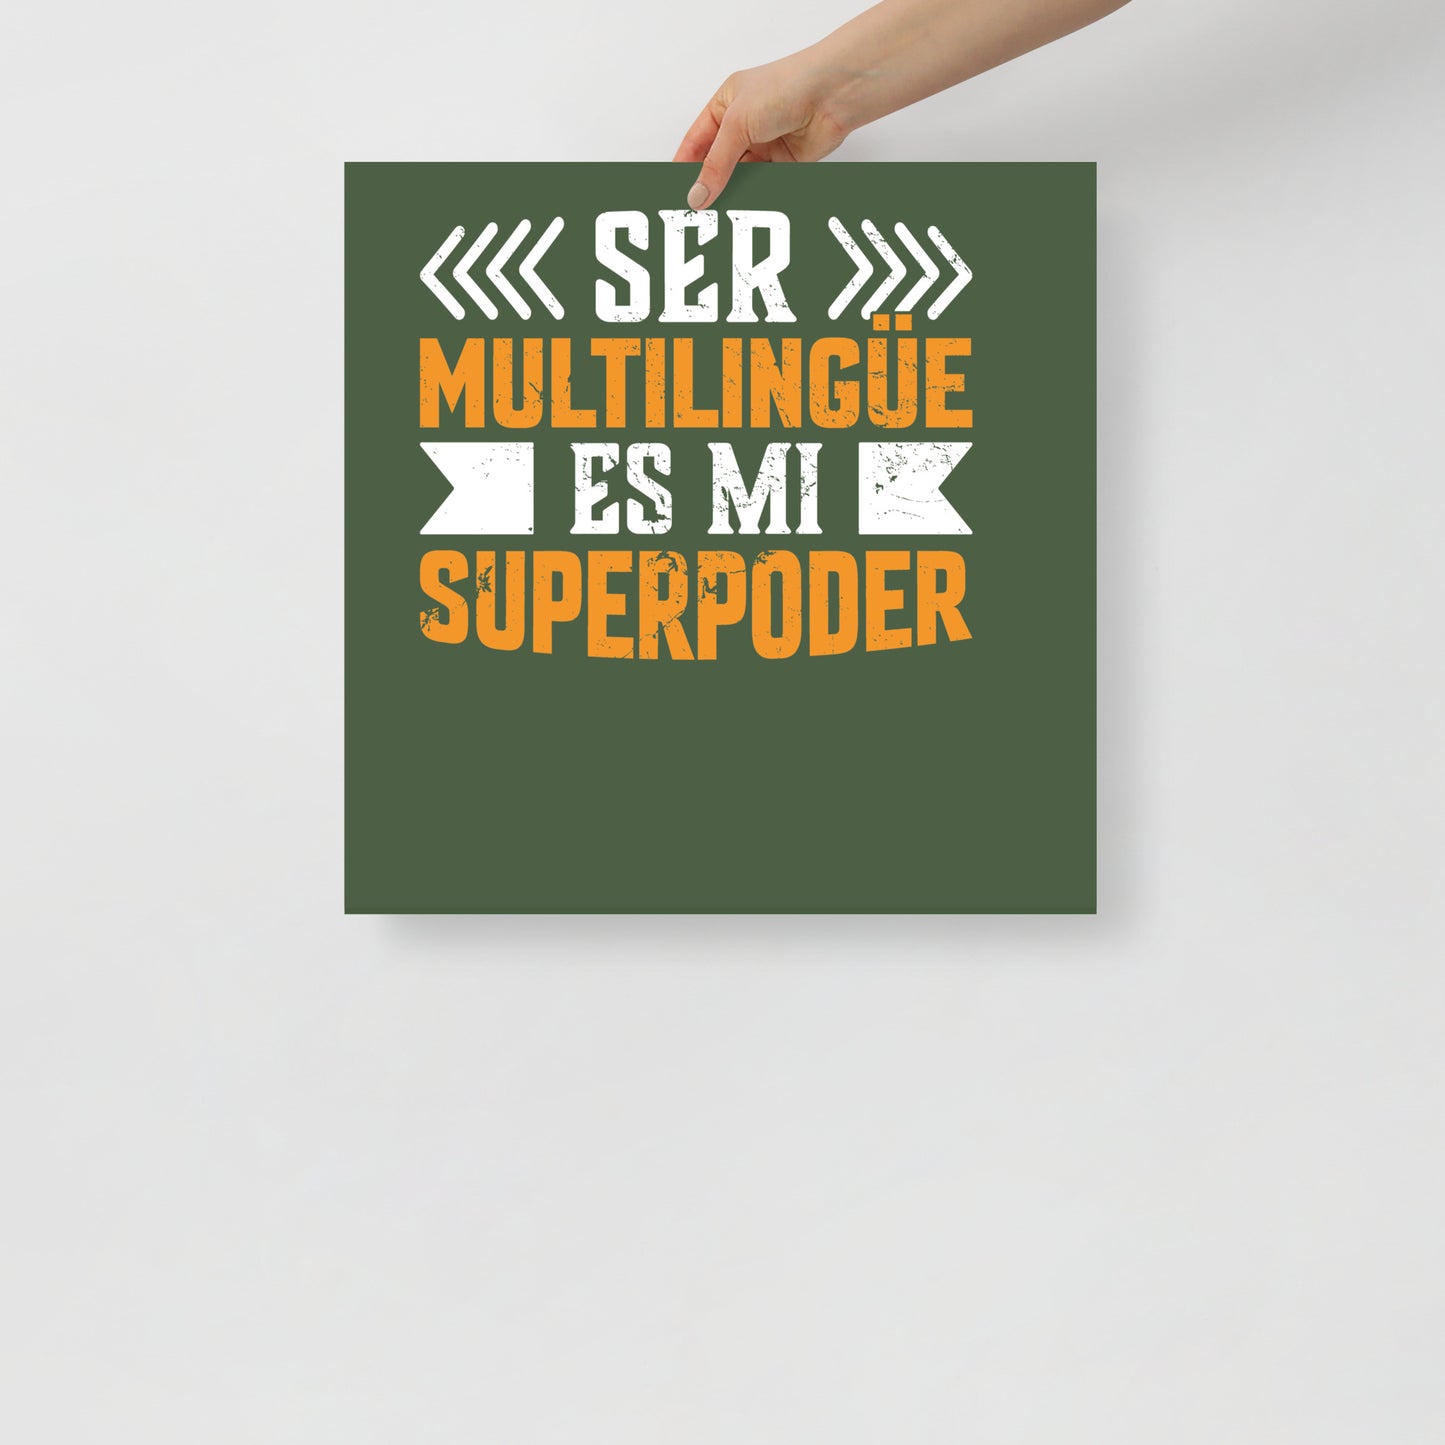 Ser multilingüe es mi póster de superpoderes (en español)